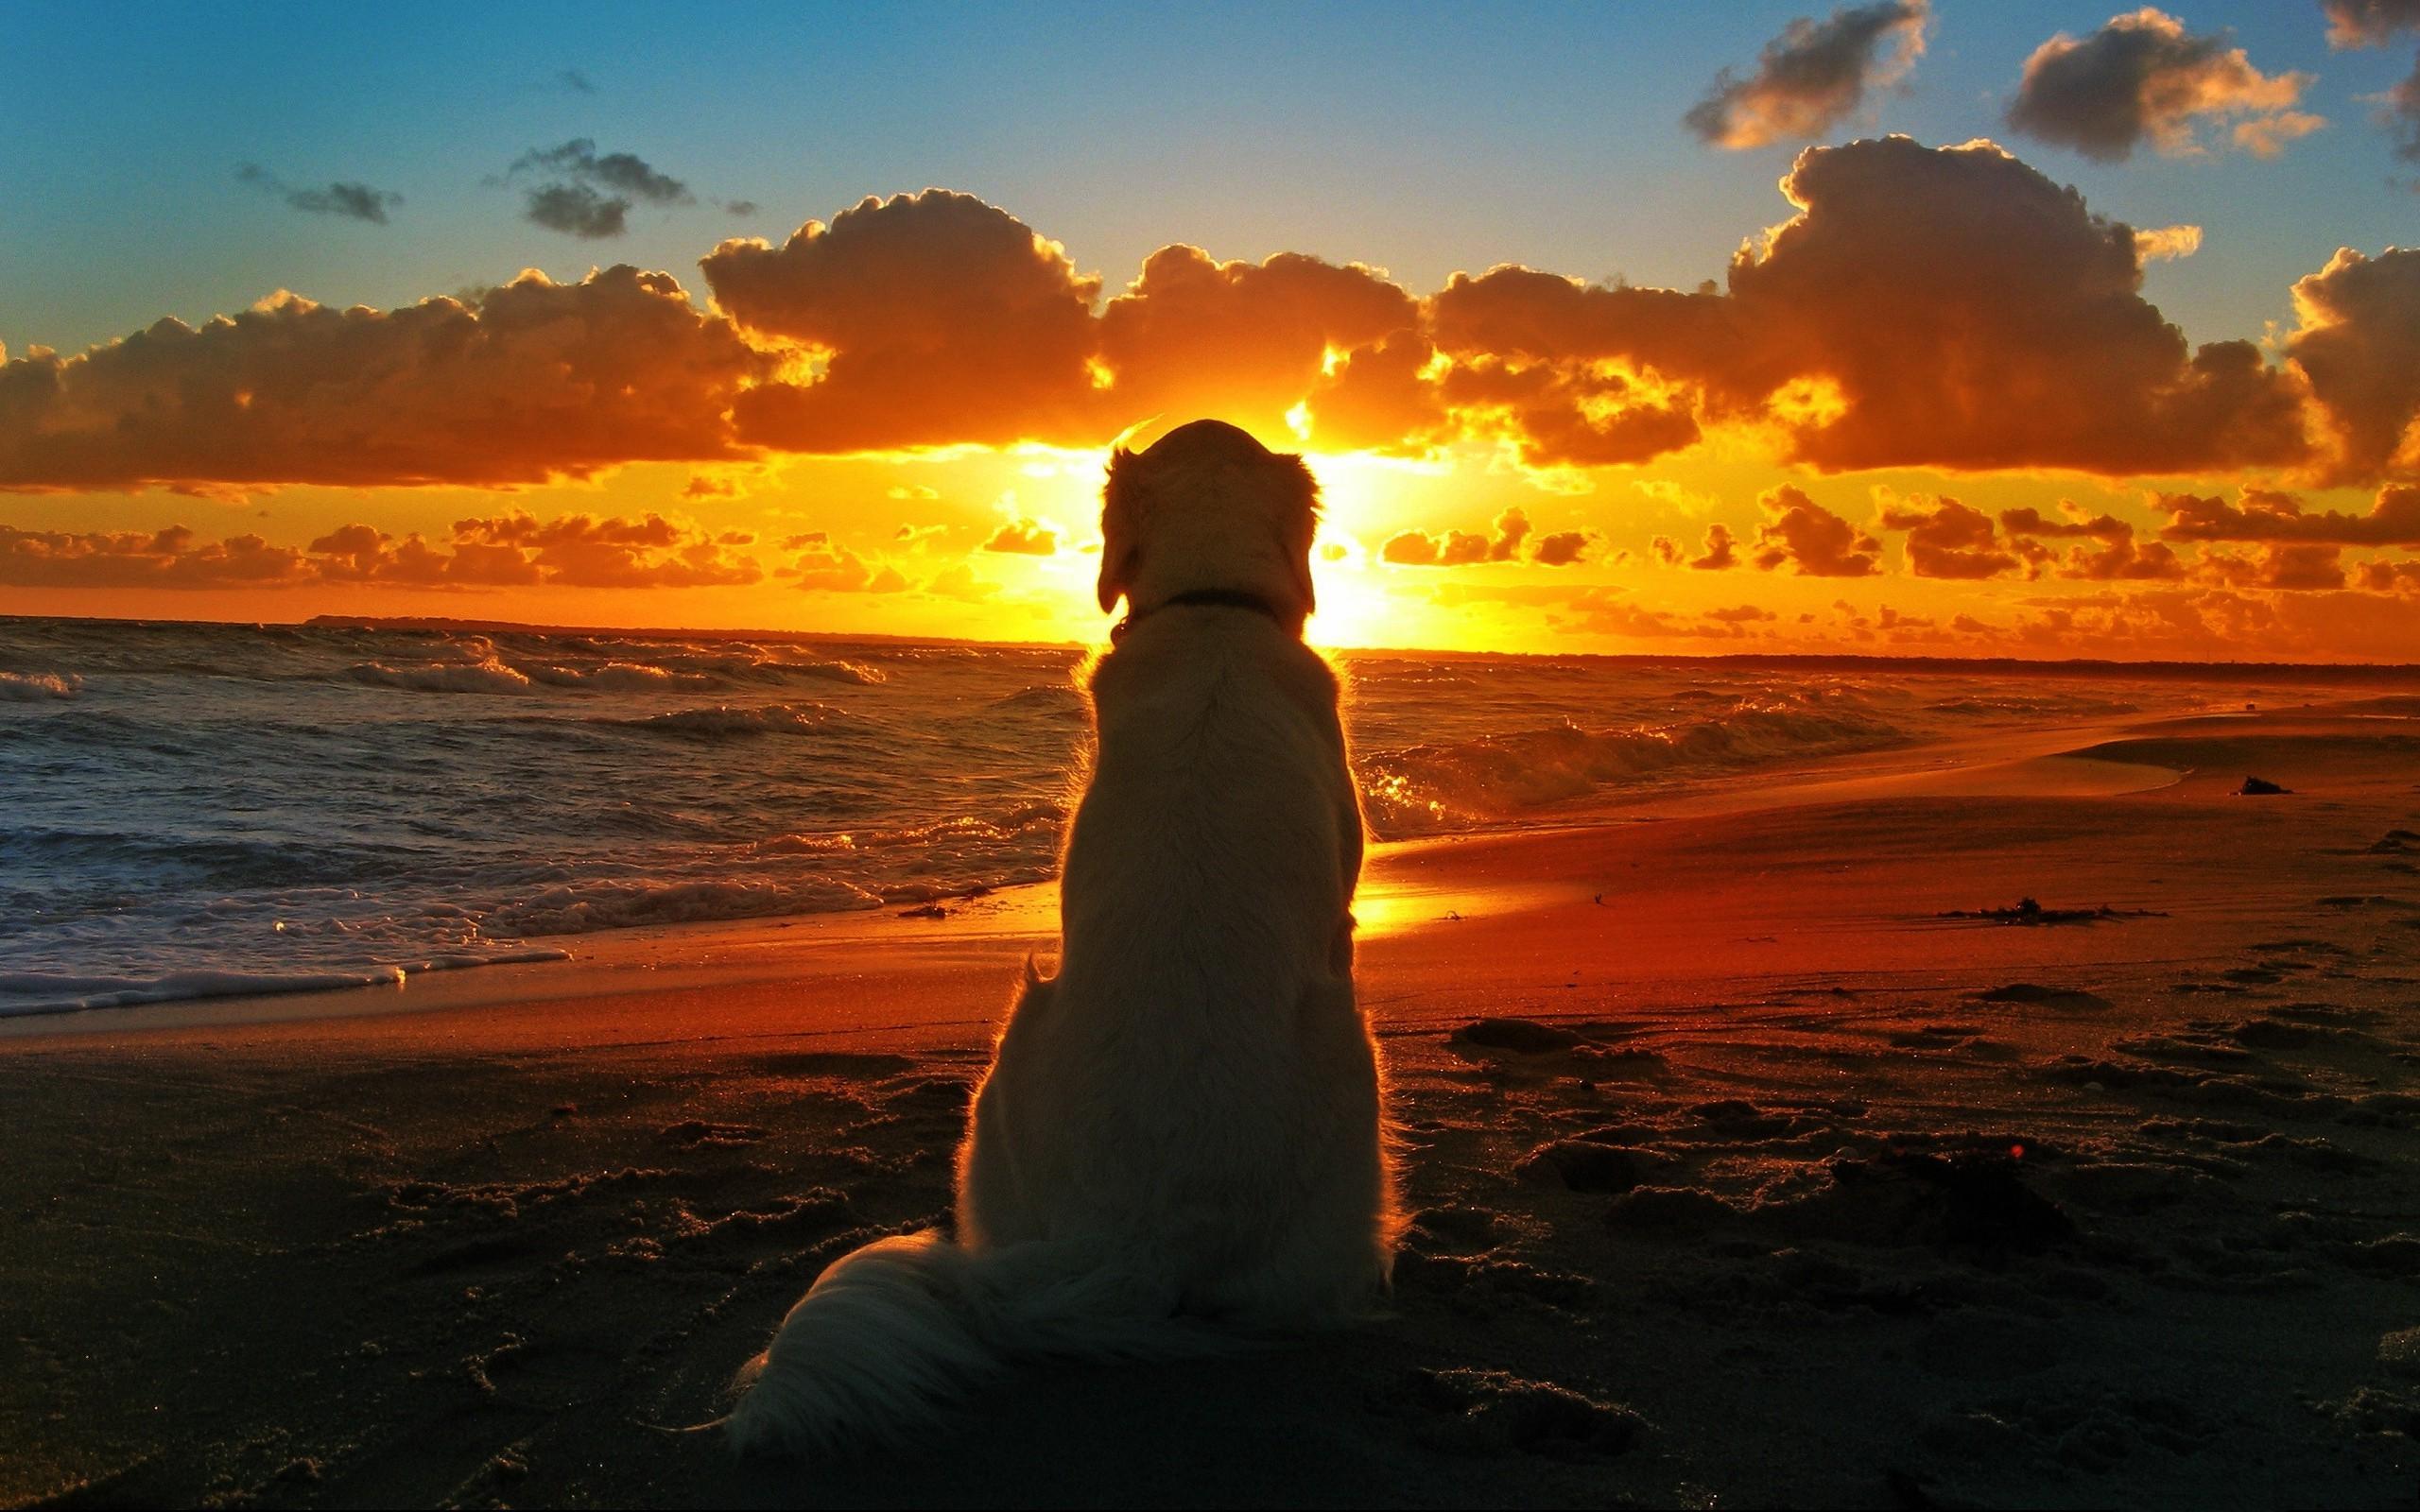 dog sunset beach waves clouds depth of field Wallpaper HD / Desktop